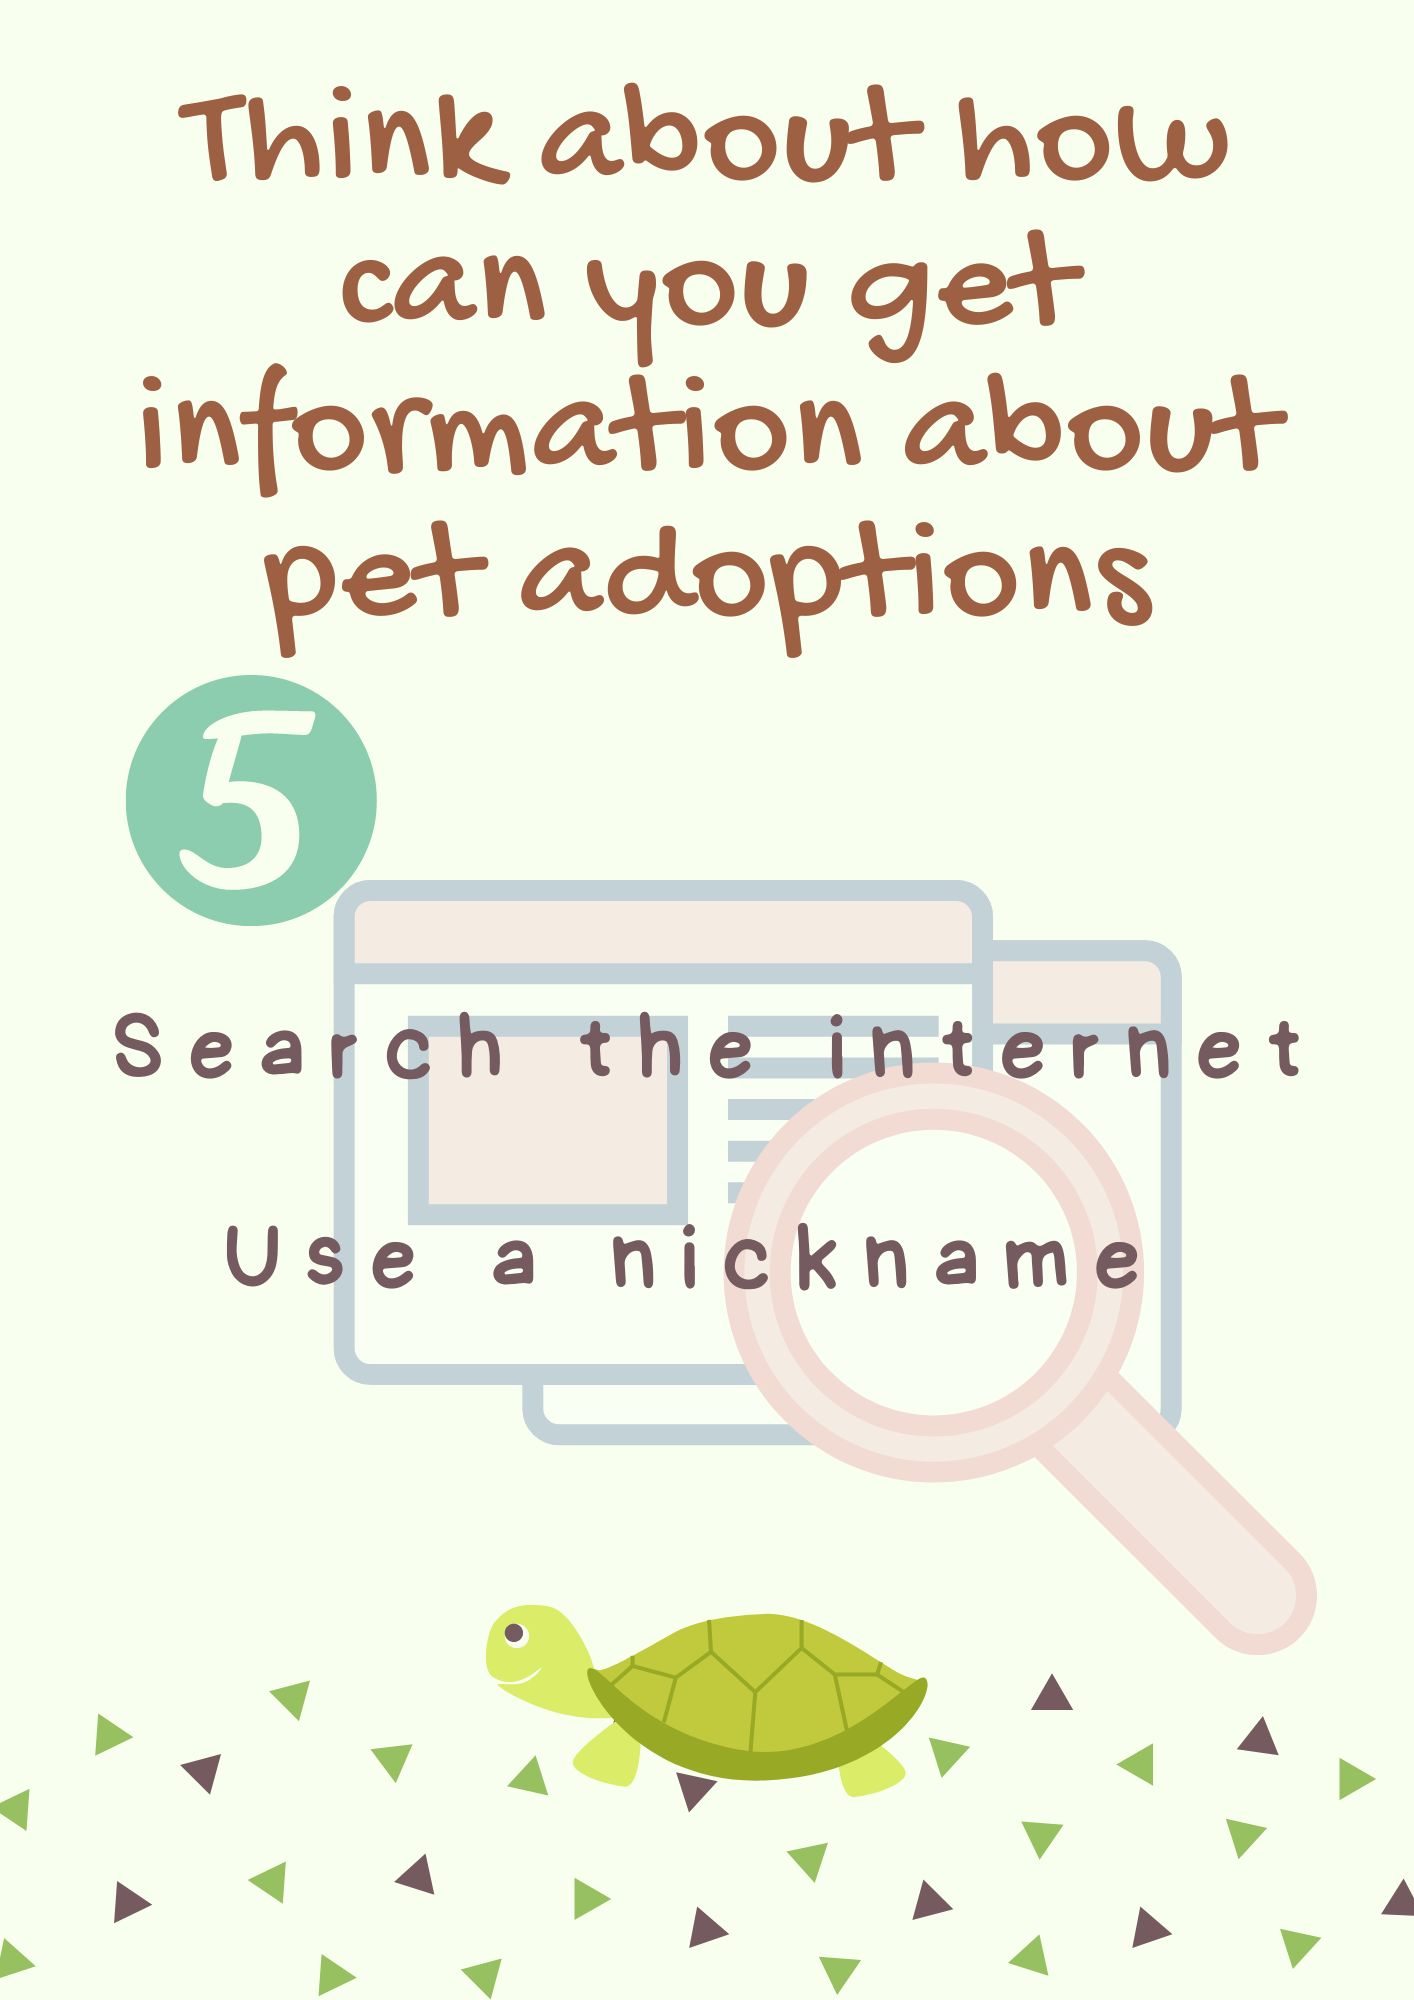 En la imagen puedes ver una infografía que te indica que pienses sobre cómo puedes obtener informació sobre adopción de mascotas